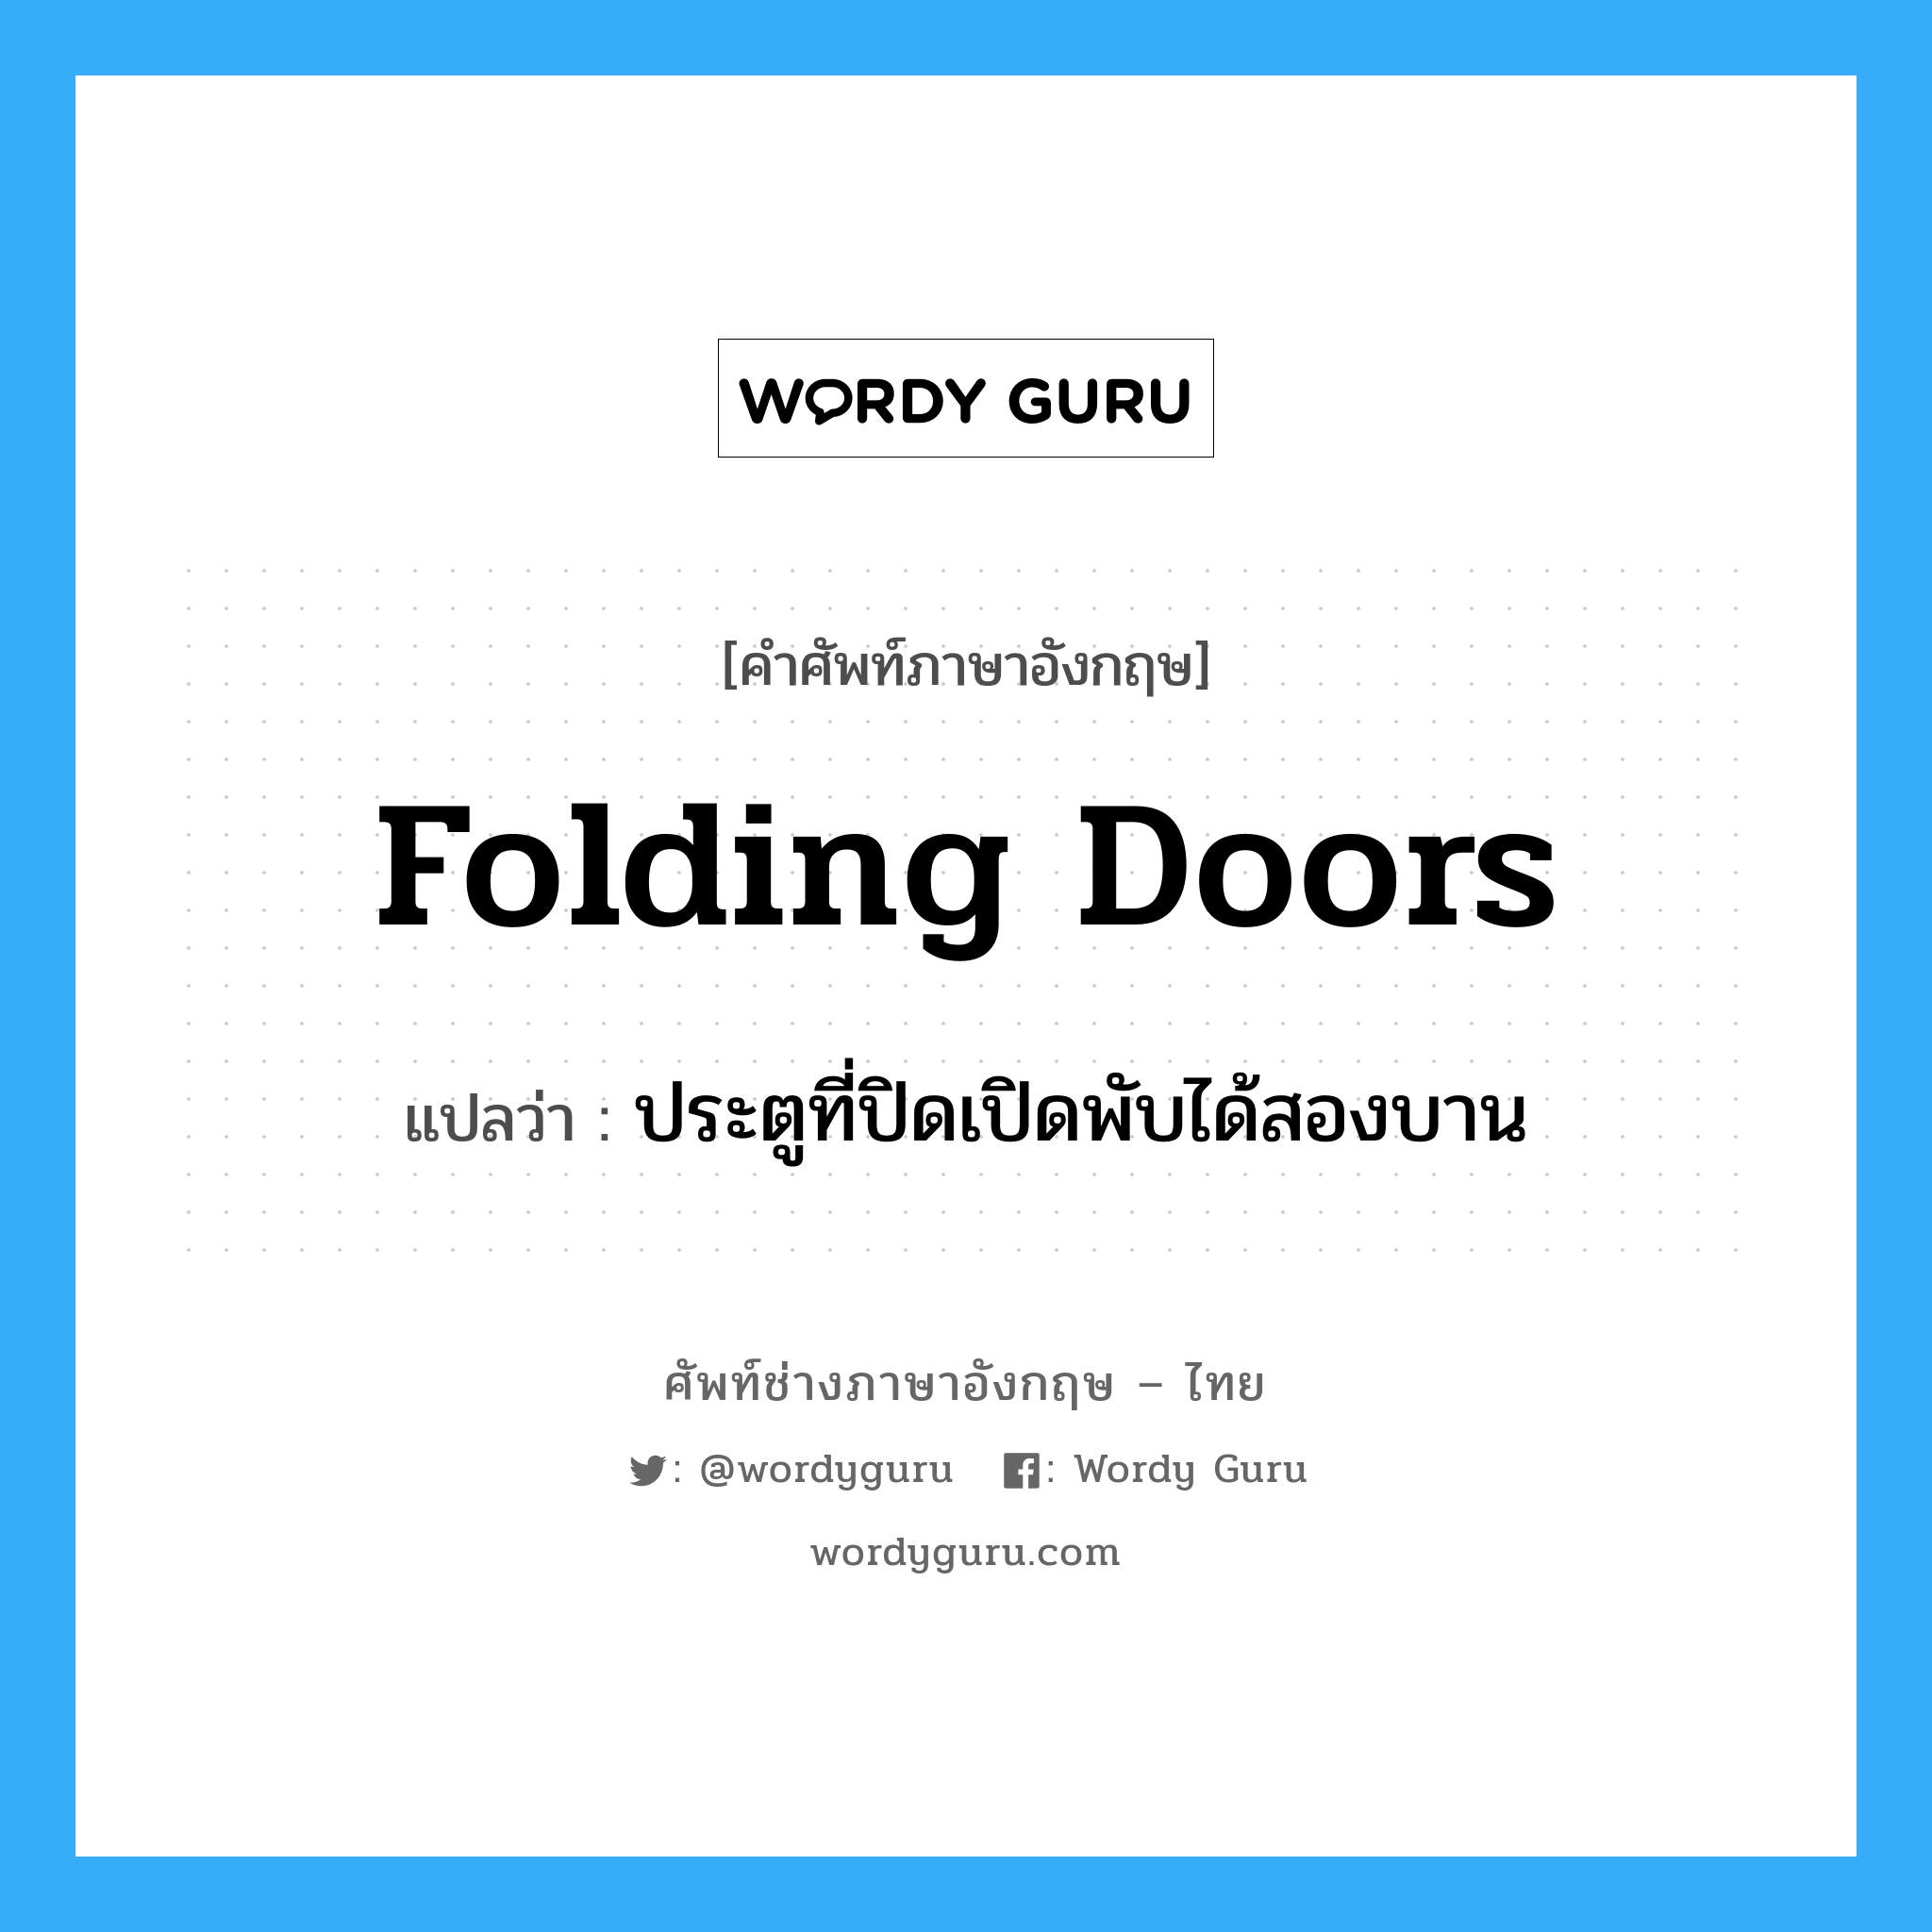 folding doors แปลว่า?, คำศัพท์ช่างภาษาอังกฤษ - ไทย folding doors คำศัพท์ภาษาอังกฤษ folding doors แปลว่า ประตูที่ปิดเปิดพับได้สองบาน